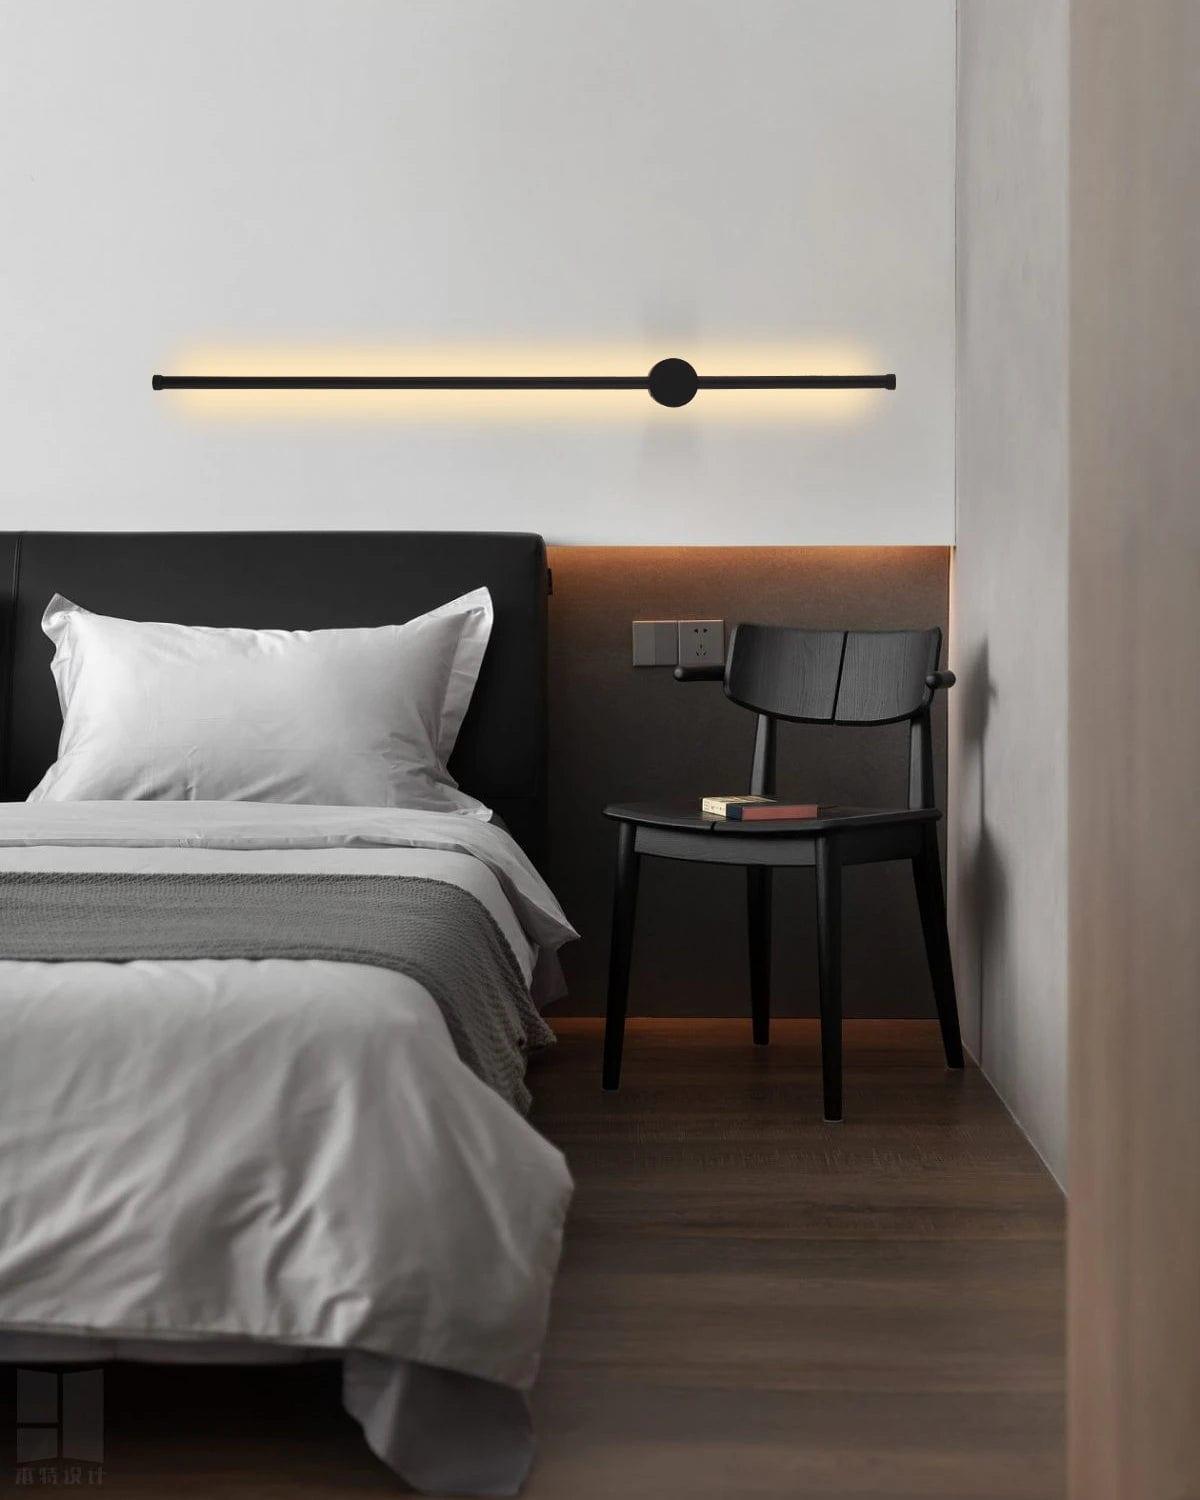 Modern Linear Led Chandelier Semi Flush Mount Integrated LED Lighting for Bedroom Black Bar - PAKOKULA LIGHTING